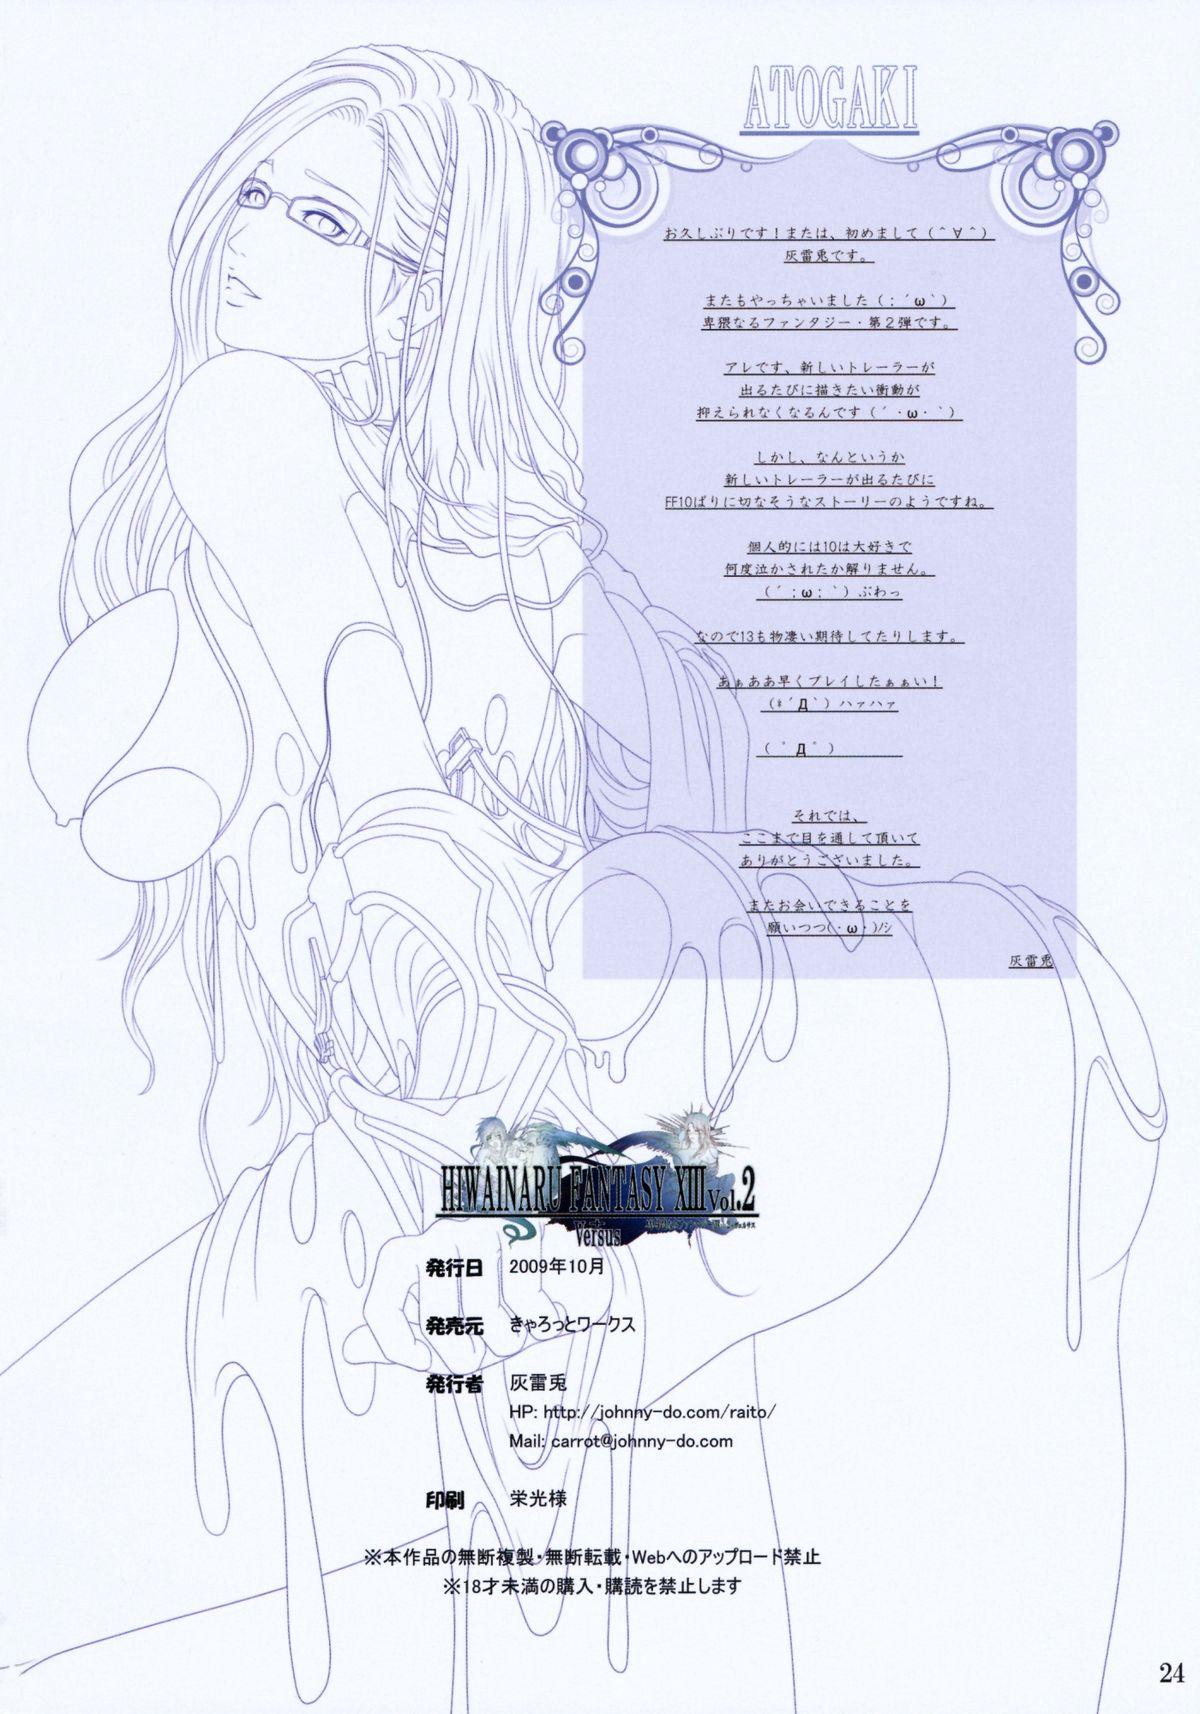 Hiwainaru Fantasy XIII Vol.2 + Versus 22